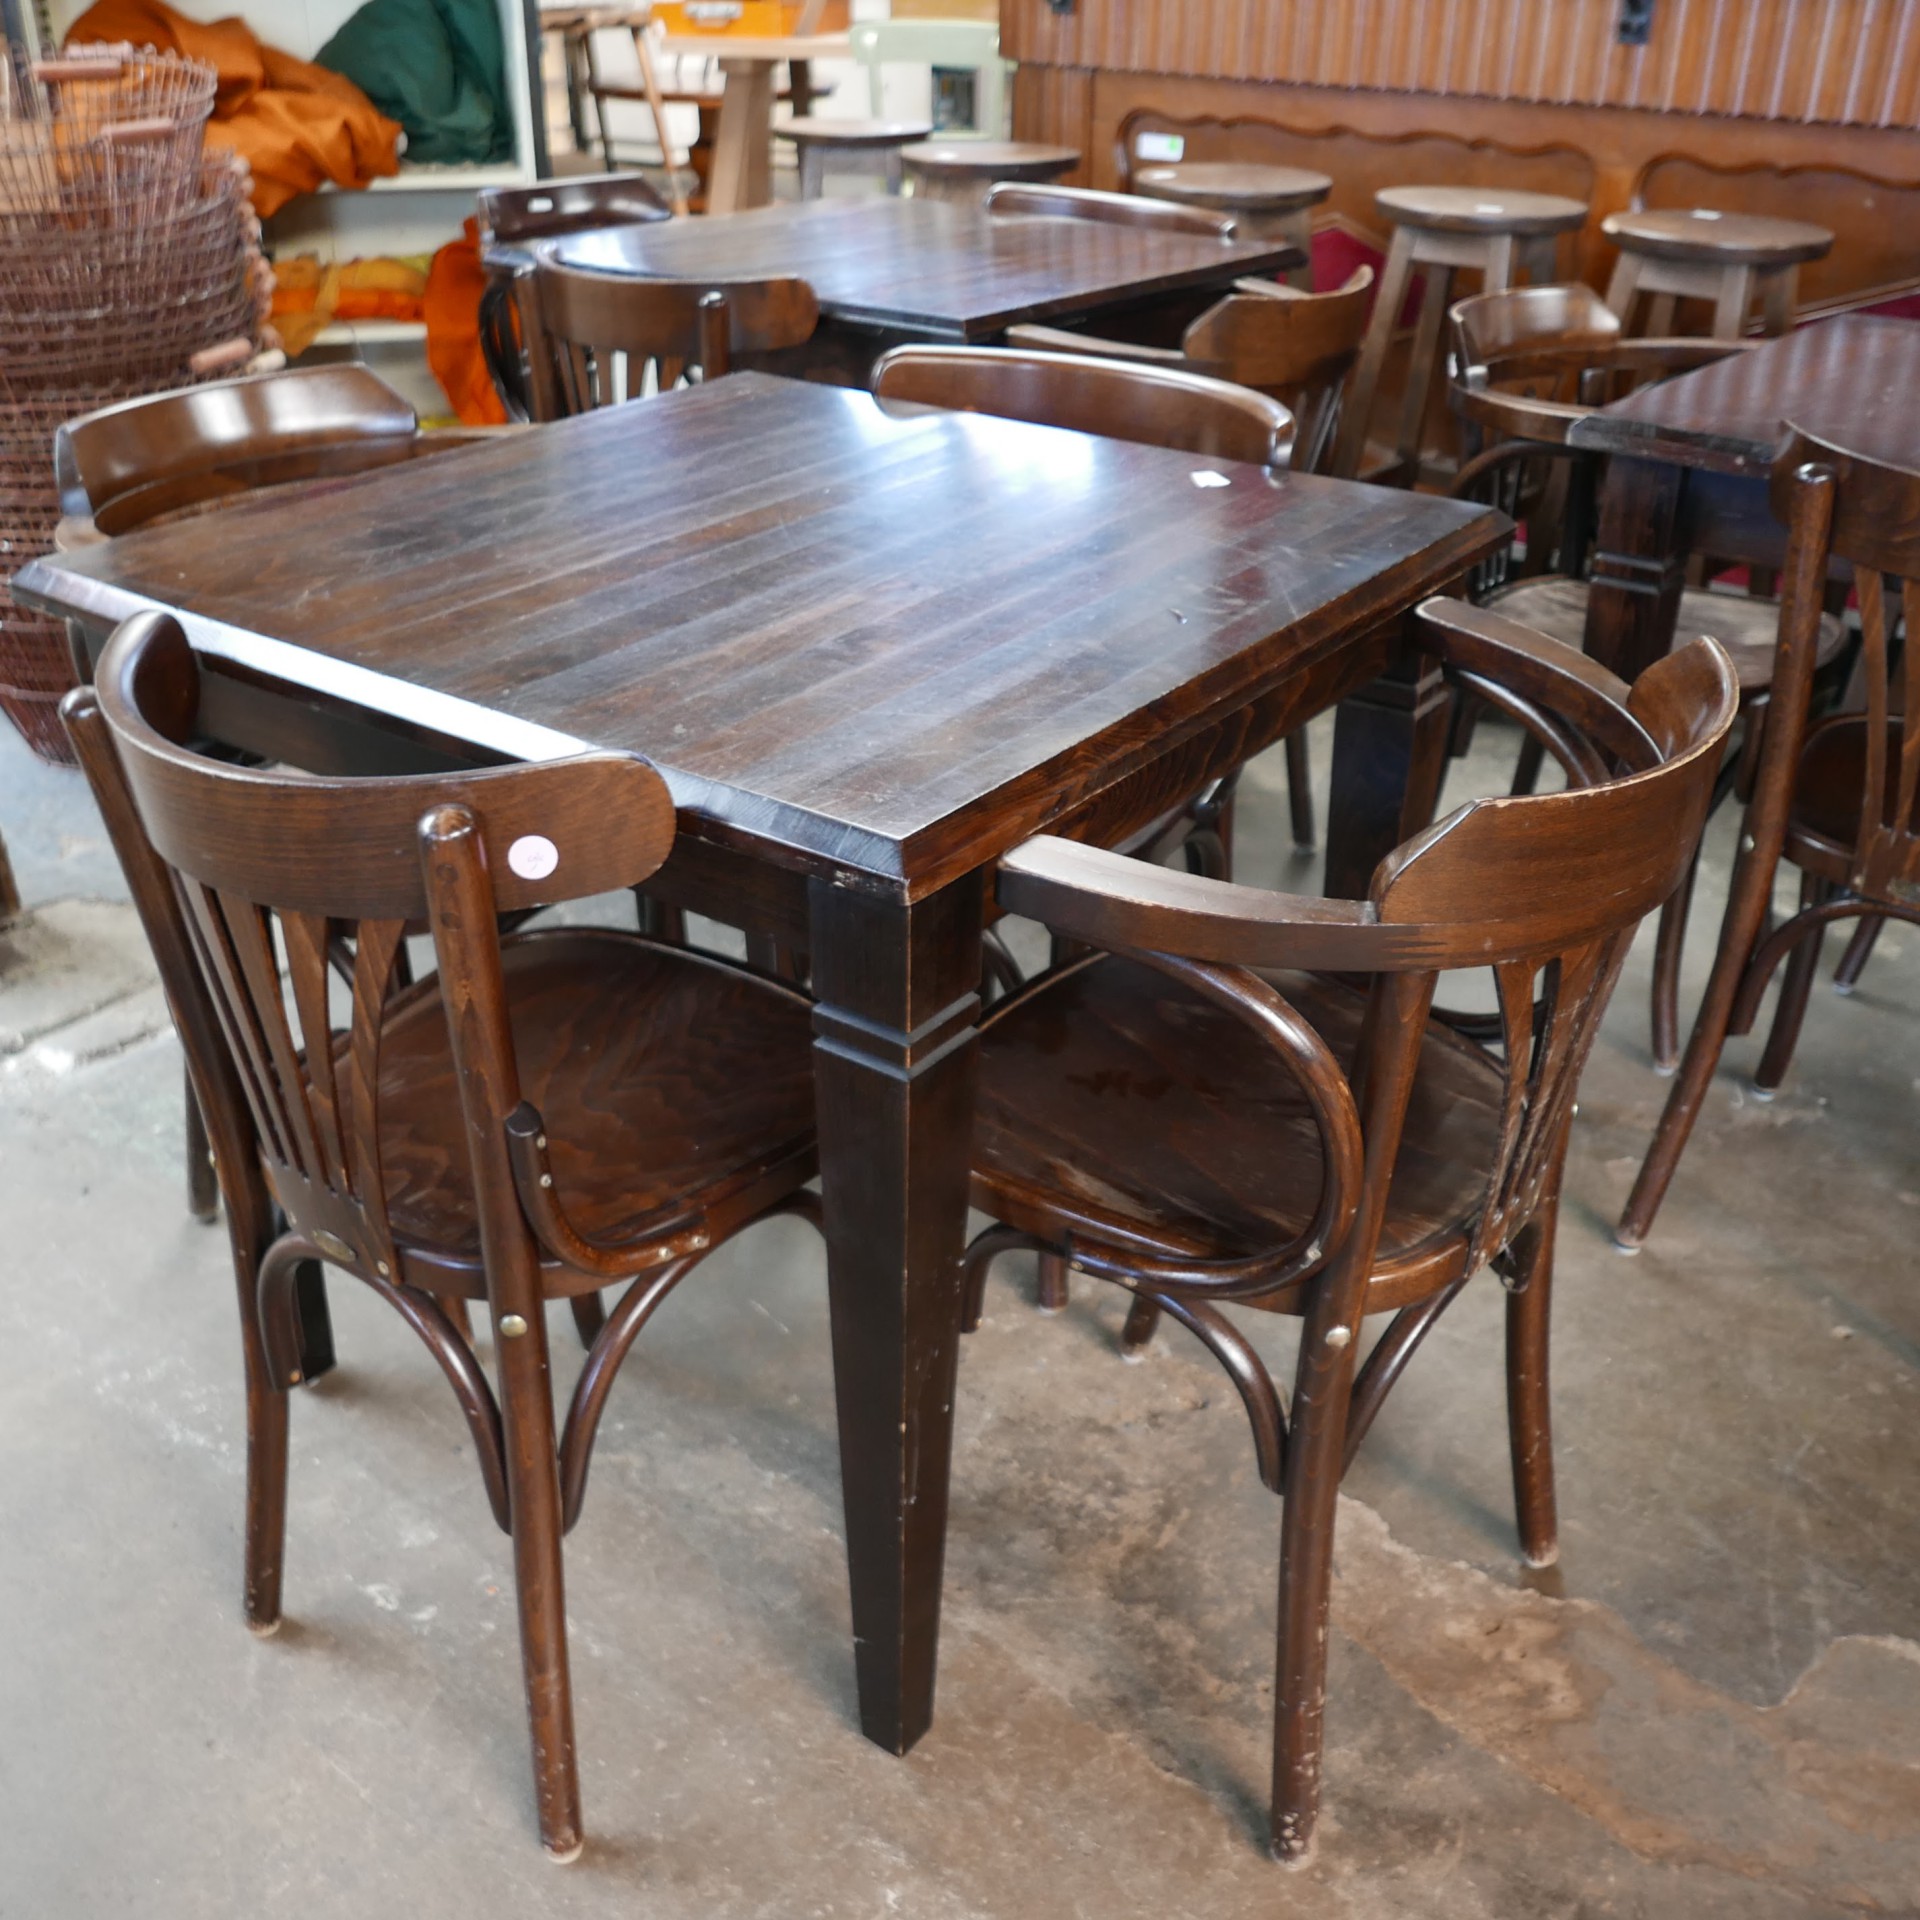 troosten Ham vaak Café tafels (6x) » Van Dijk & Ko